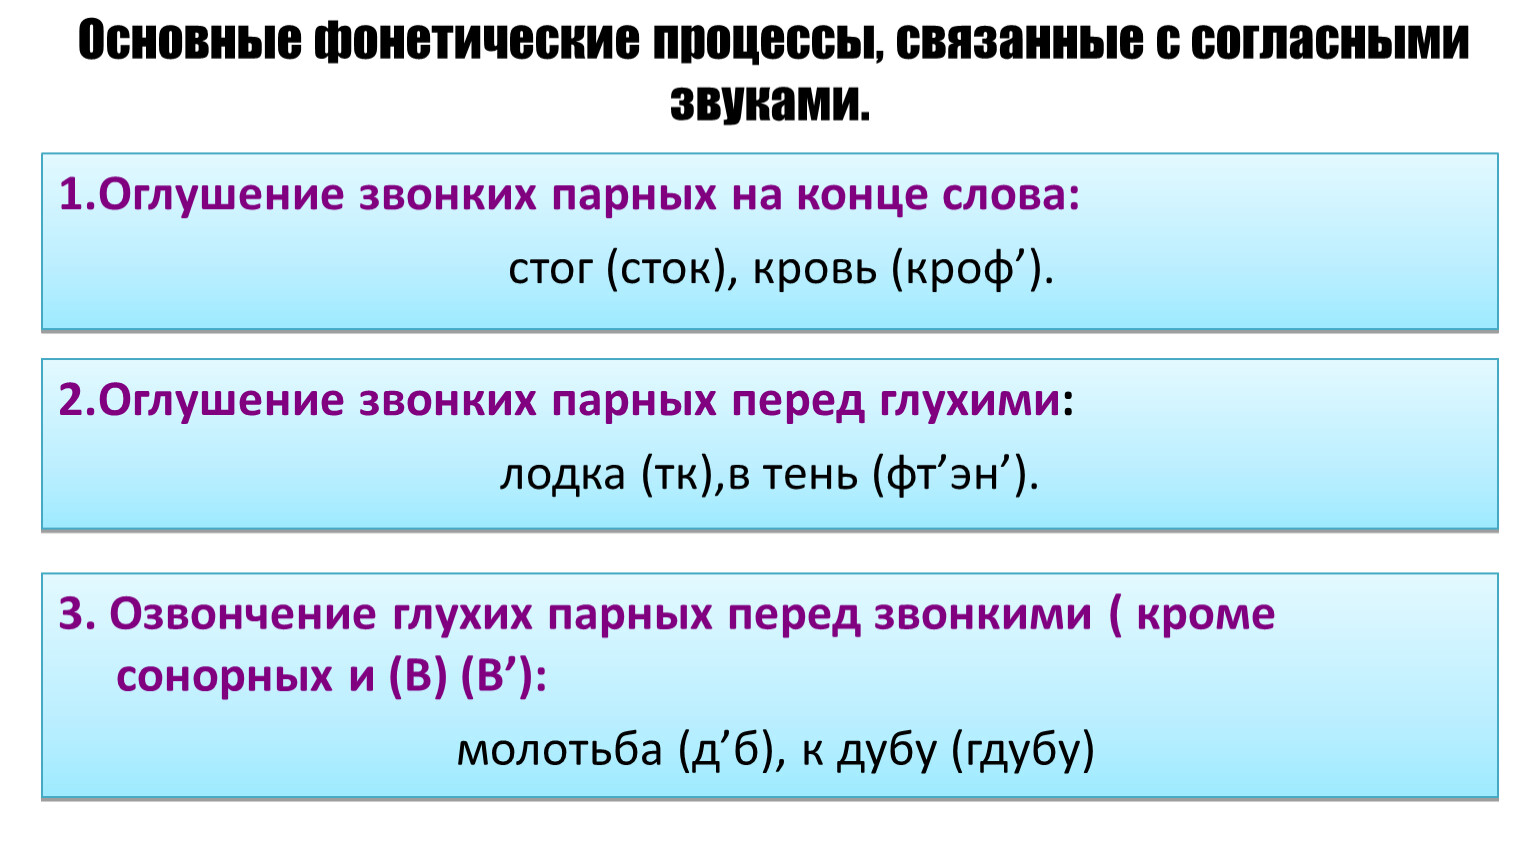 Основные фонетические процессы в русском языке